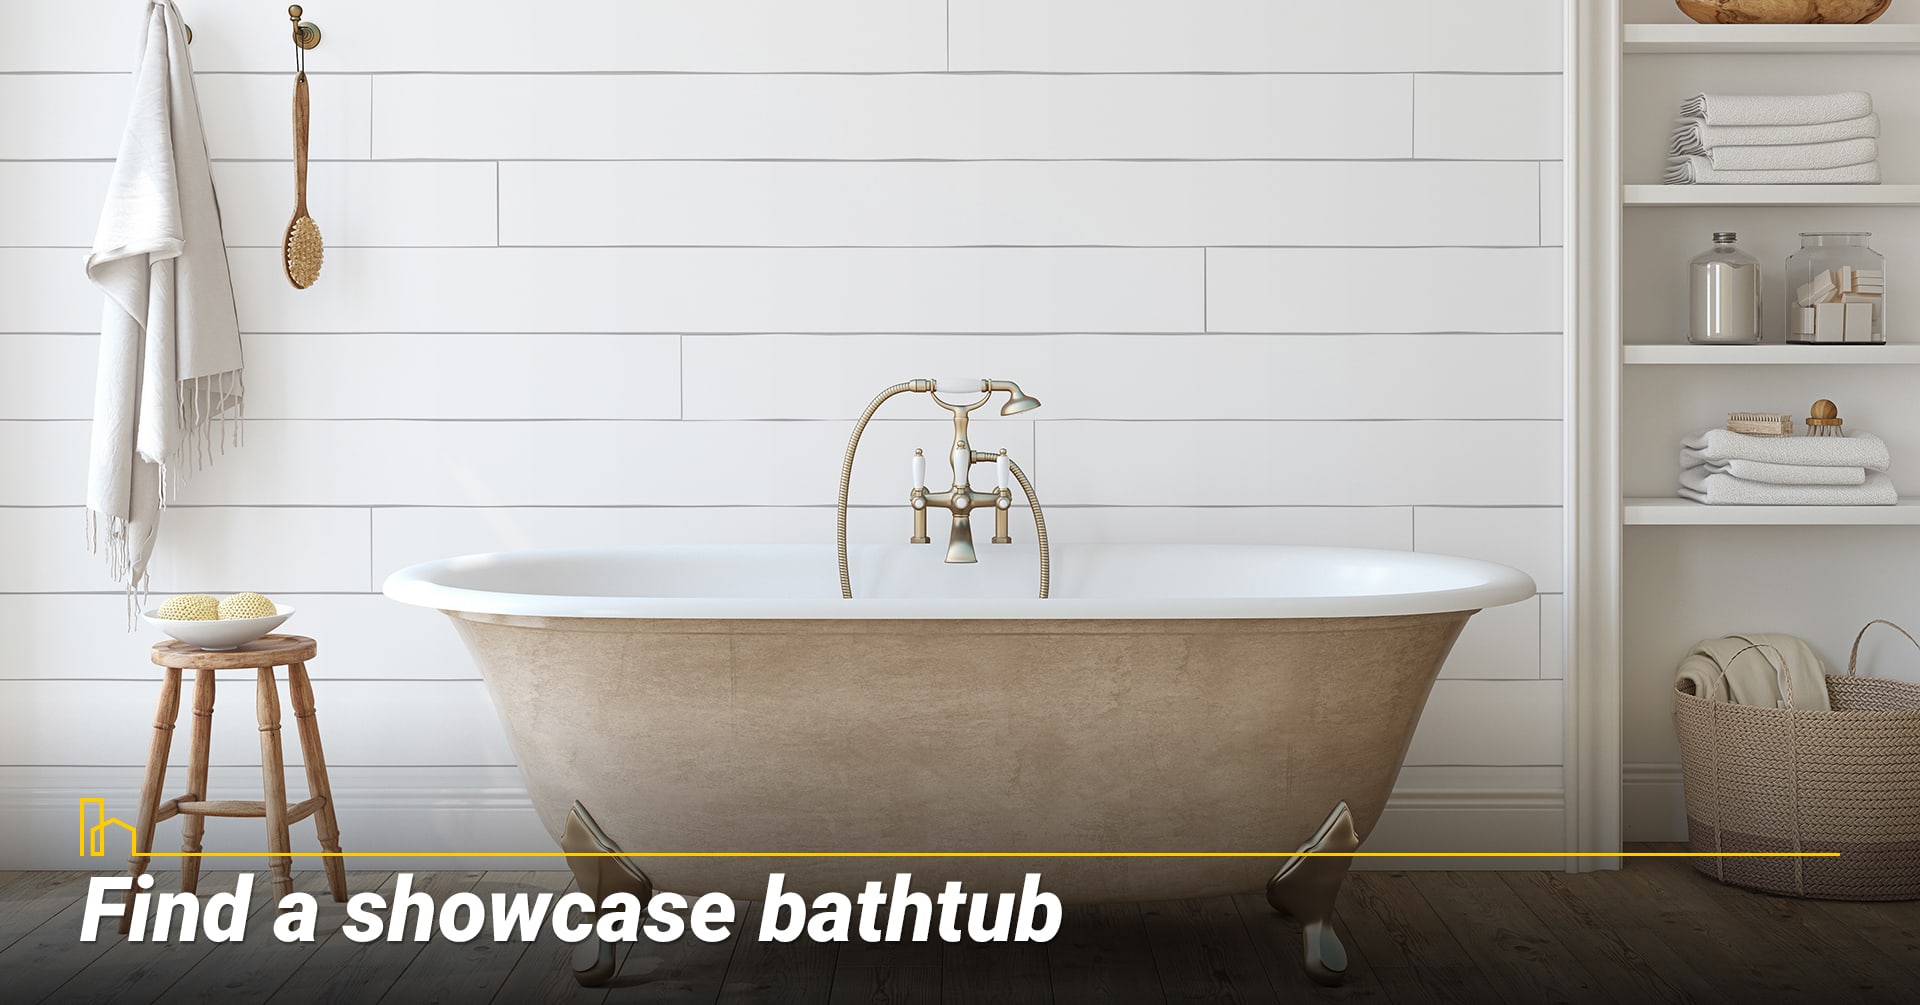 Find a showcase bathtub